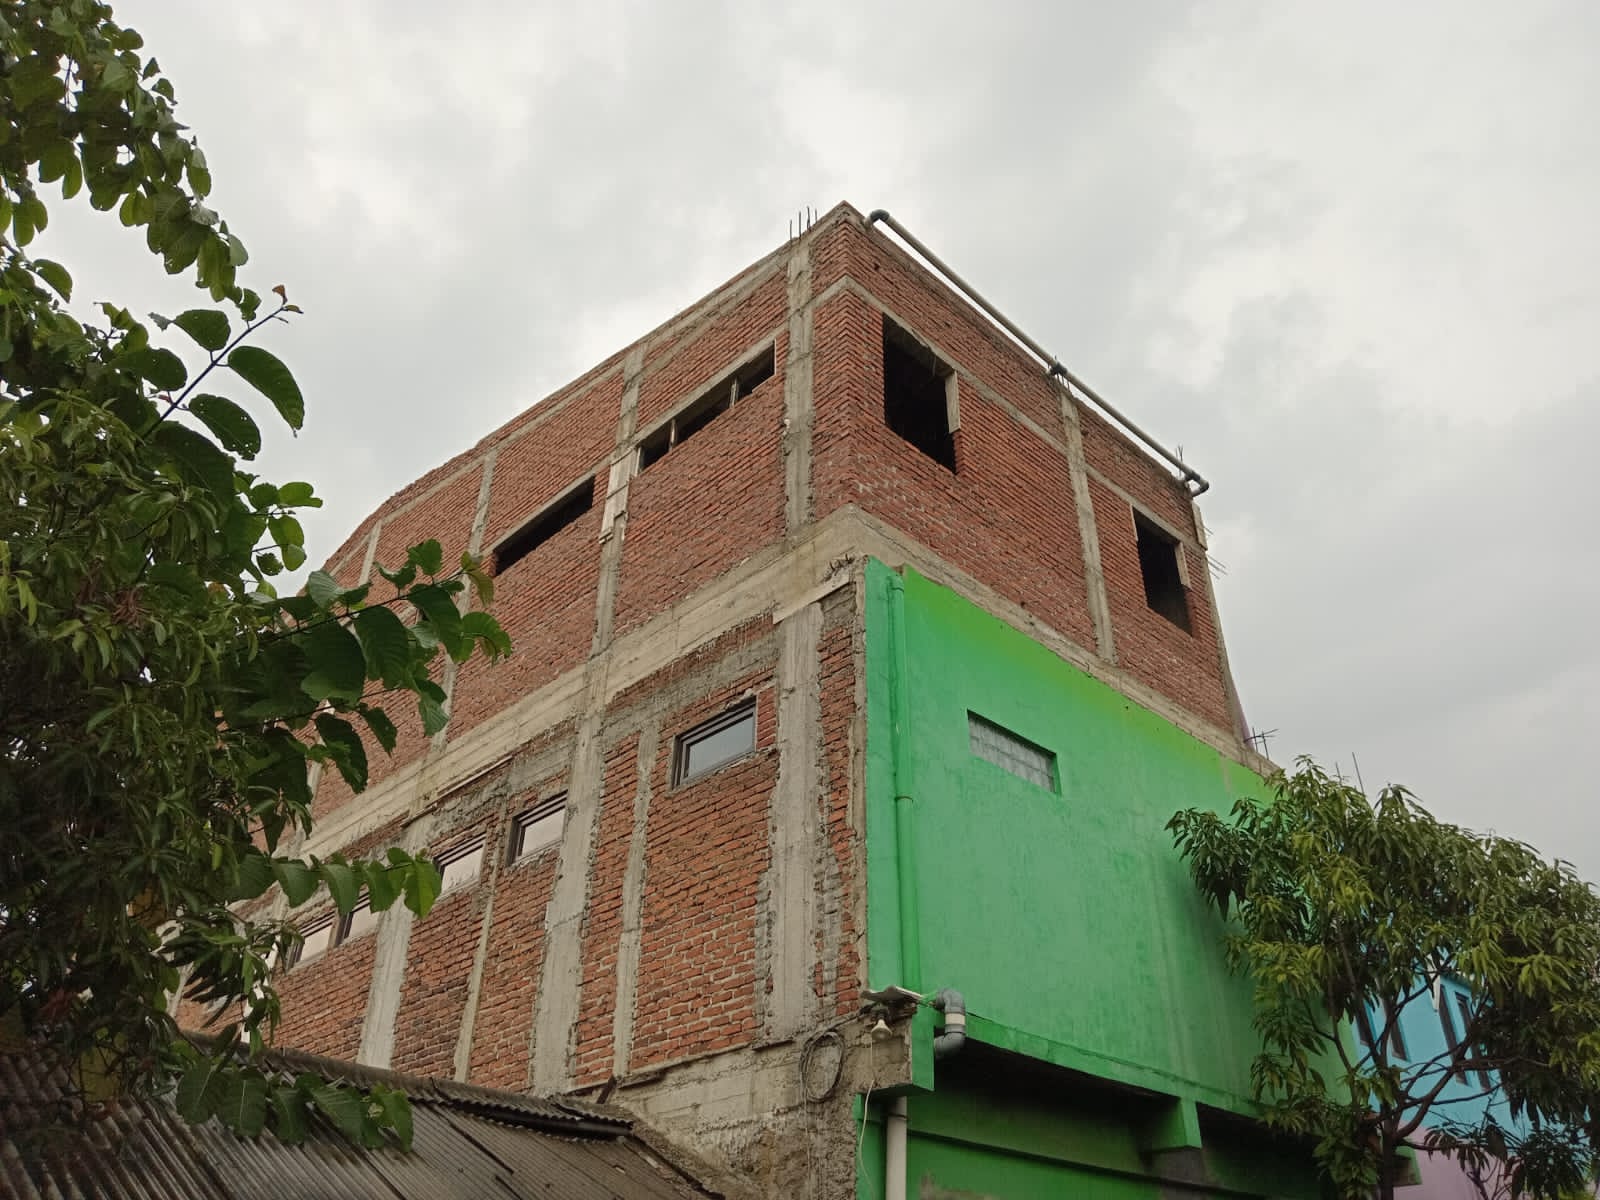 Penampakan bangunan sekolah di Jalan Cisaranten 1, Kecamatan Arcamanik, Kota Bandung yang diduga ilegal.